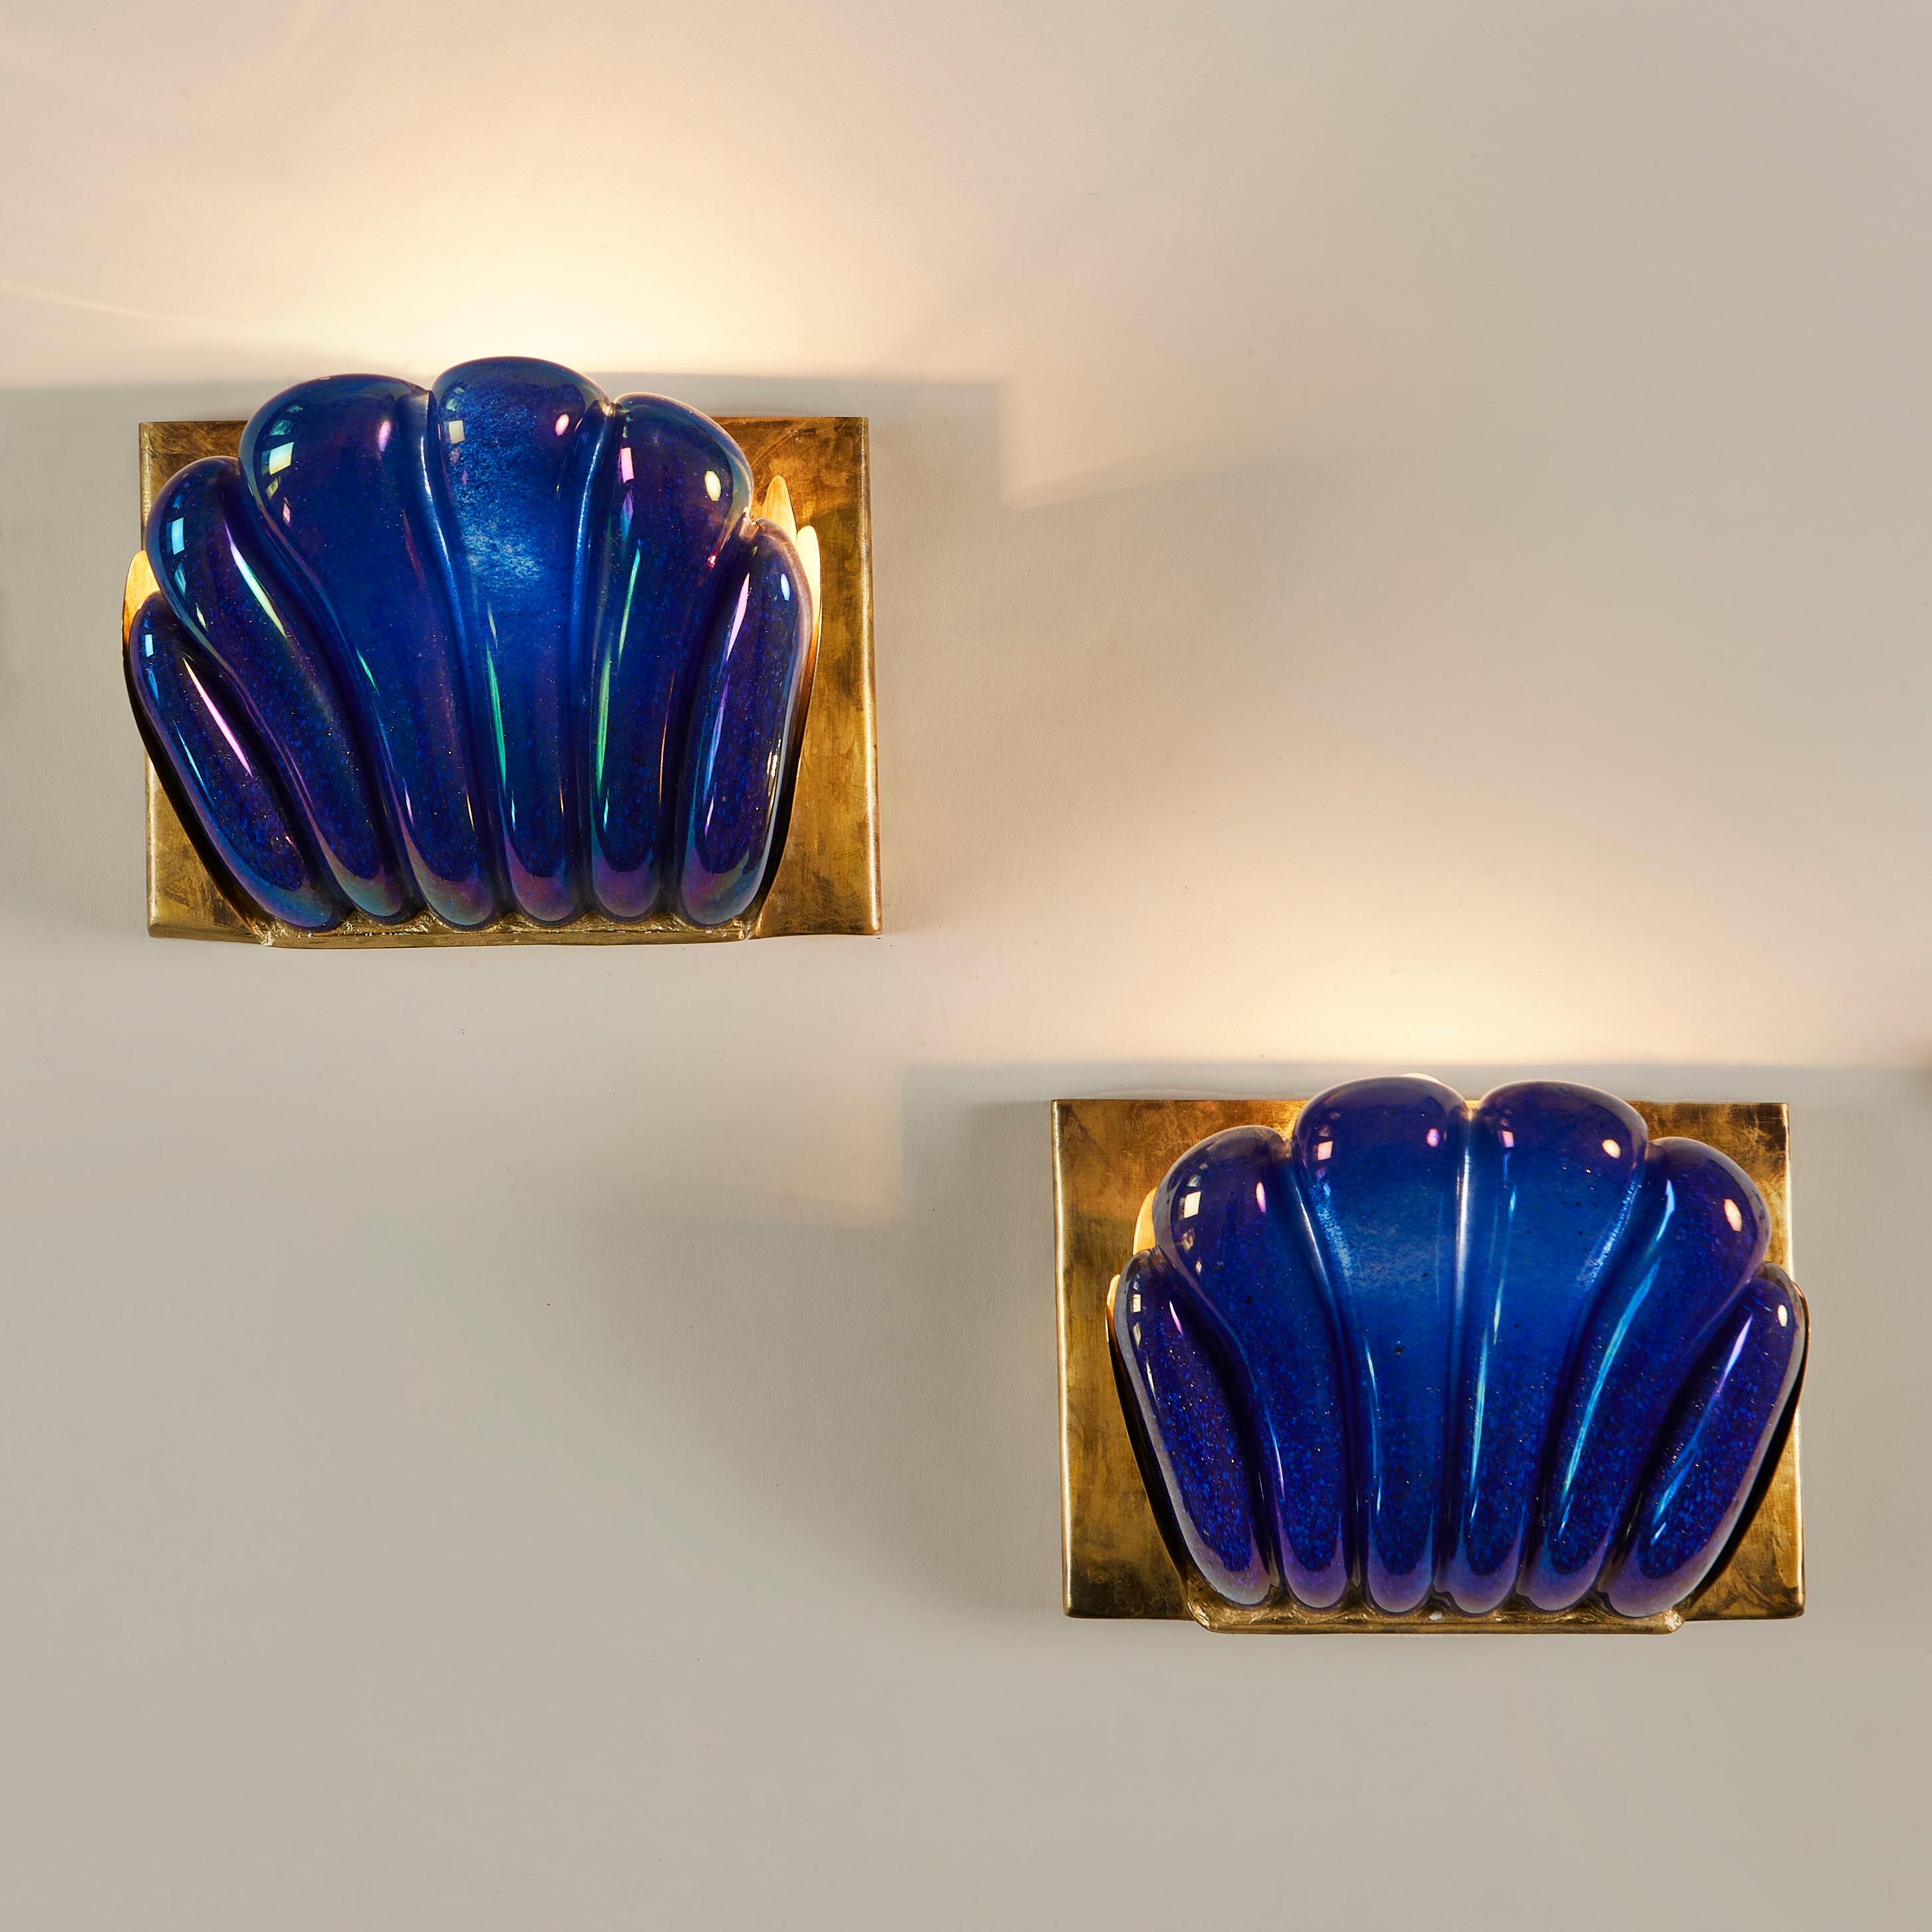 Verre de Murano épais, lisse et généreusement festonné, d'un riche bleu égyptien irisé. La plaque arrière est en laiton. Un éclairage d'ambiance parfait. Marqué 